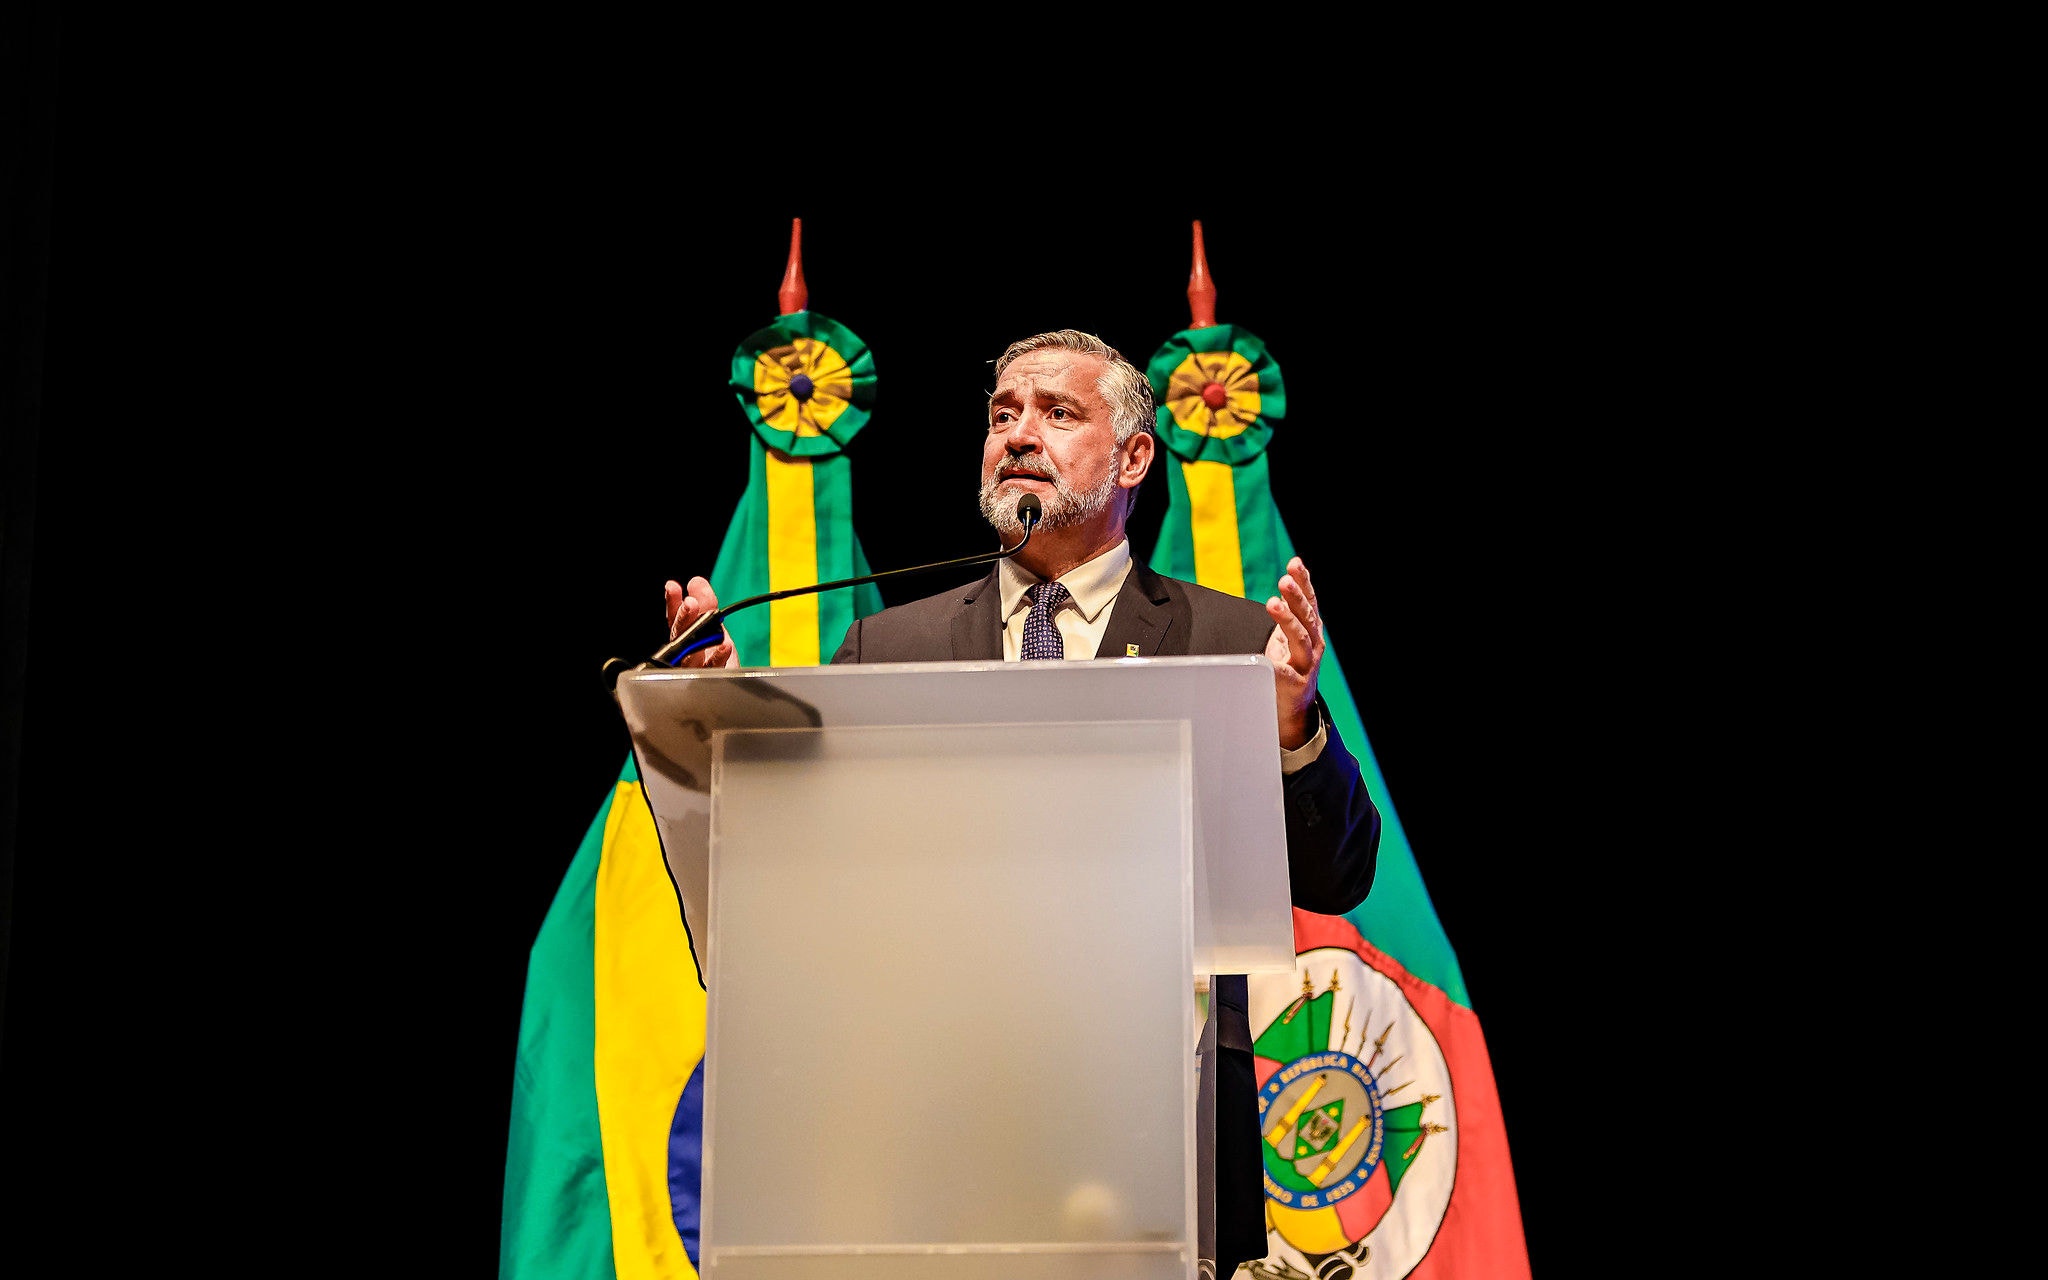 Paulo Pimenta durante evento do governo federal no Centro de Eventos da Fiergs, em Porto Alegre